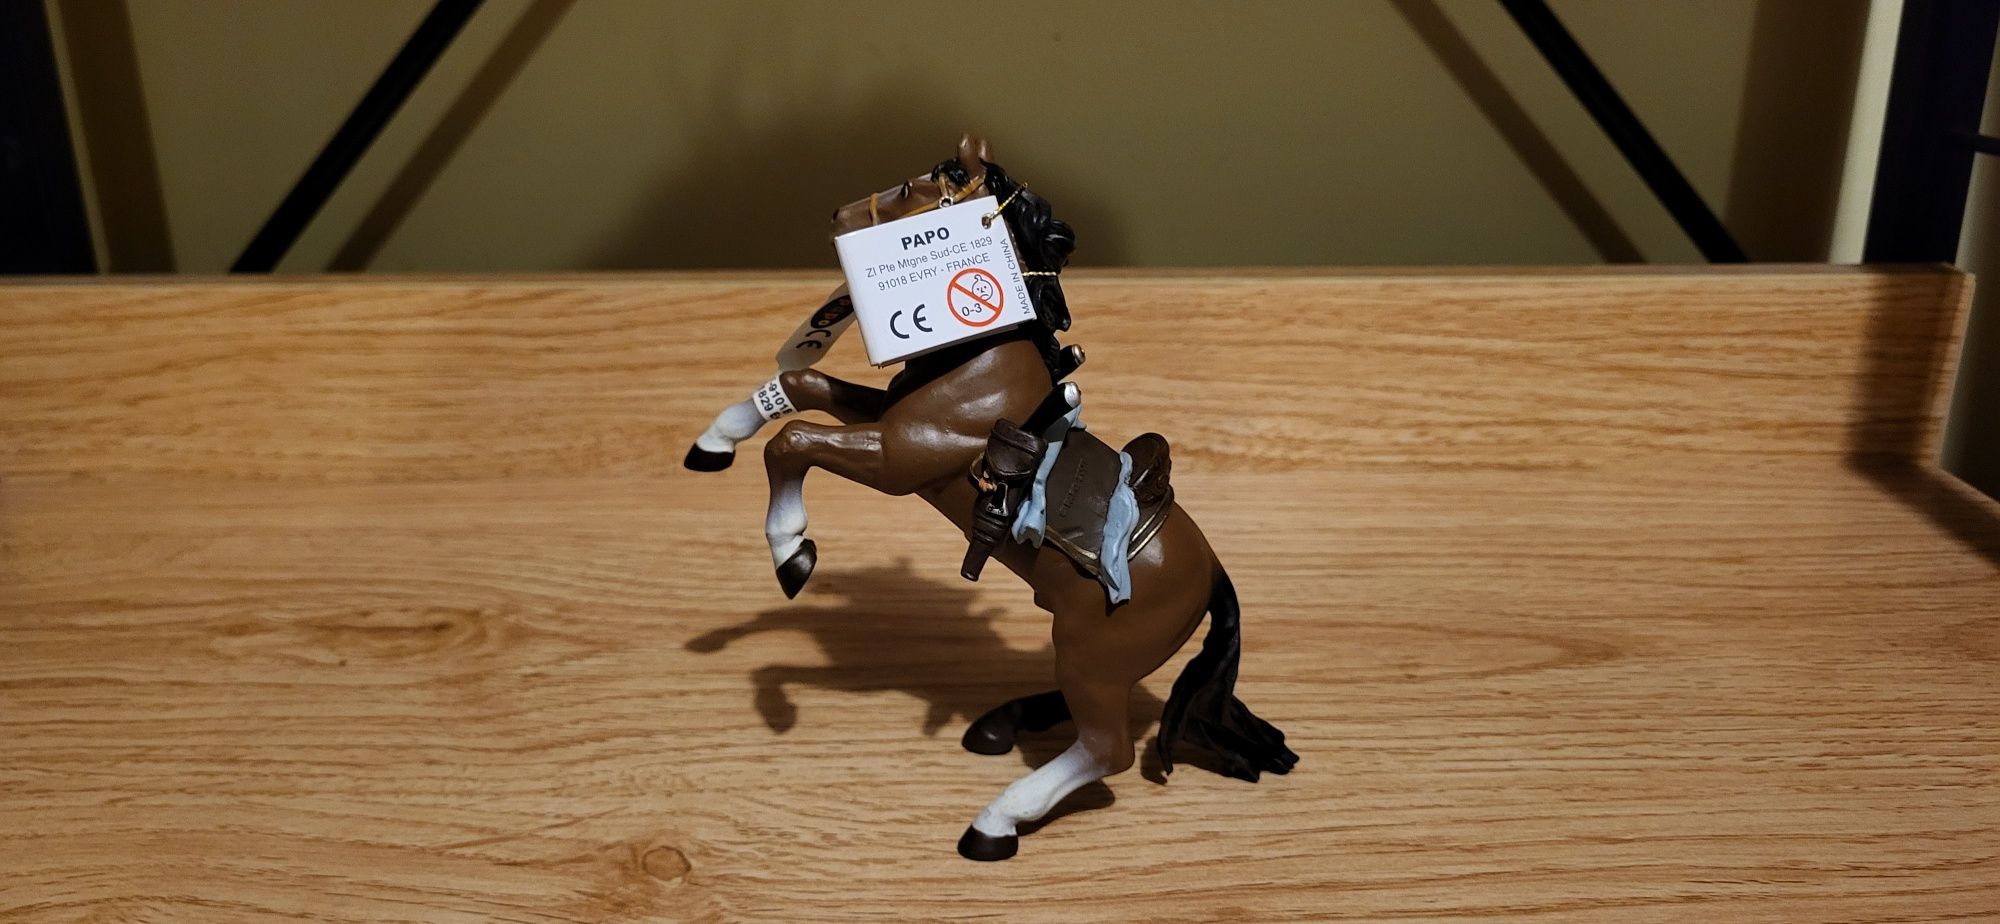 Papo koń muszkieterów figurka model z 2001 r.